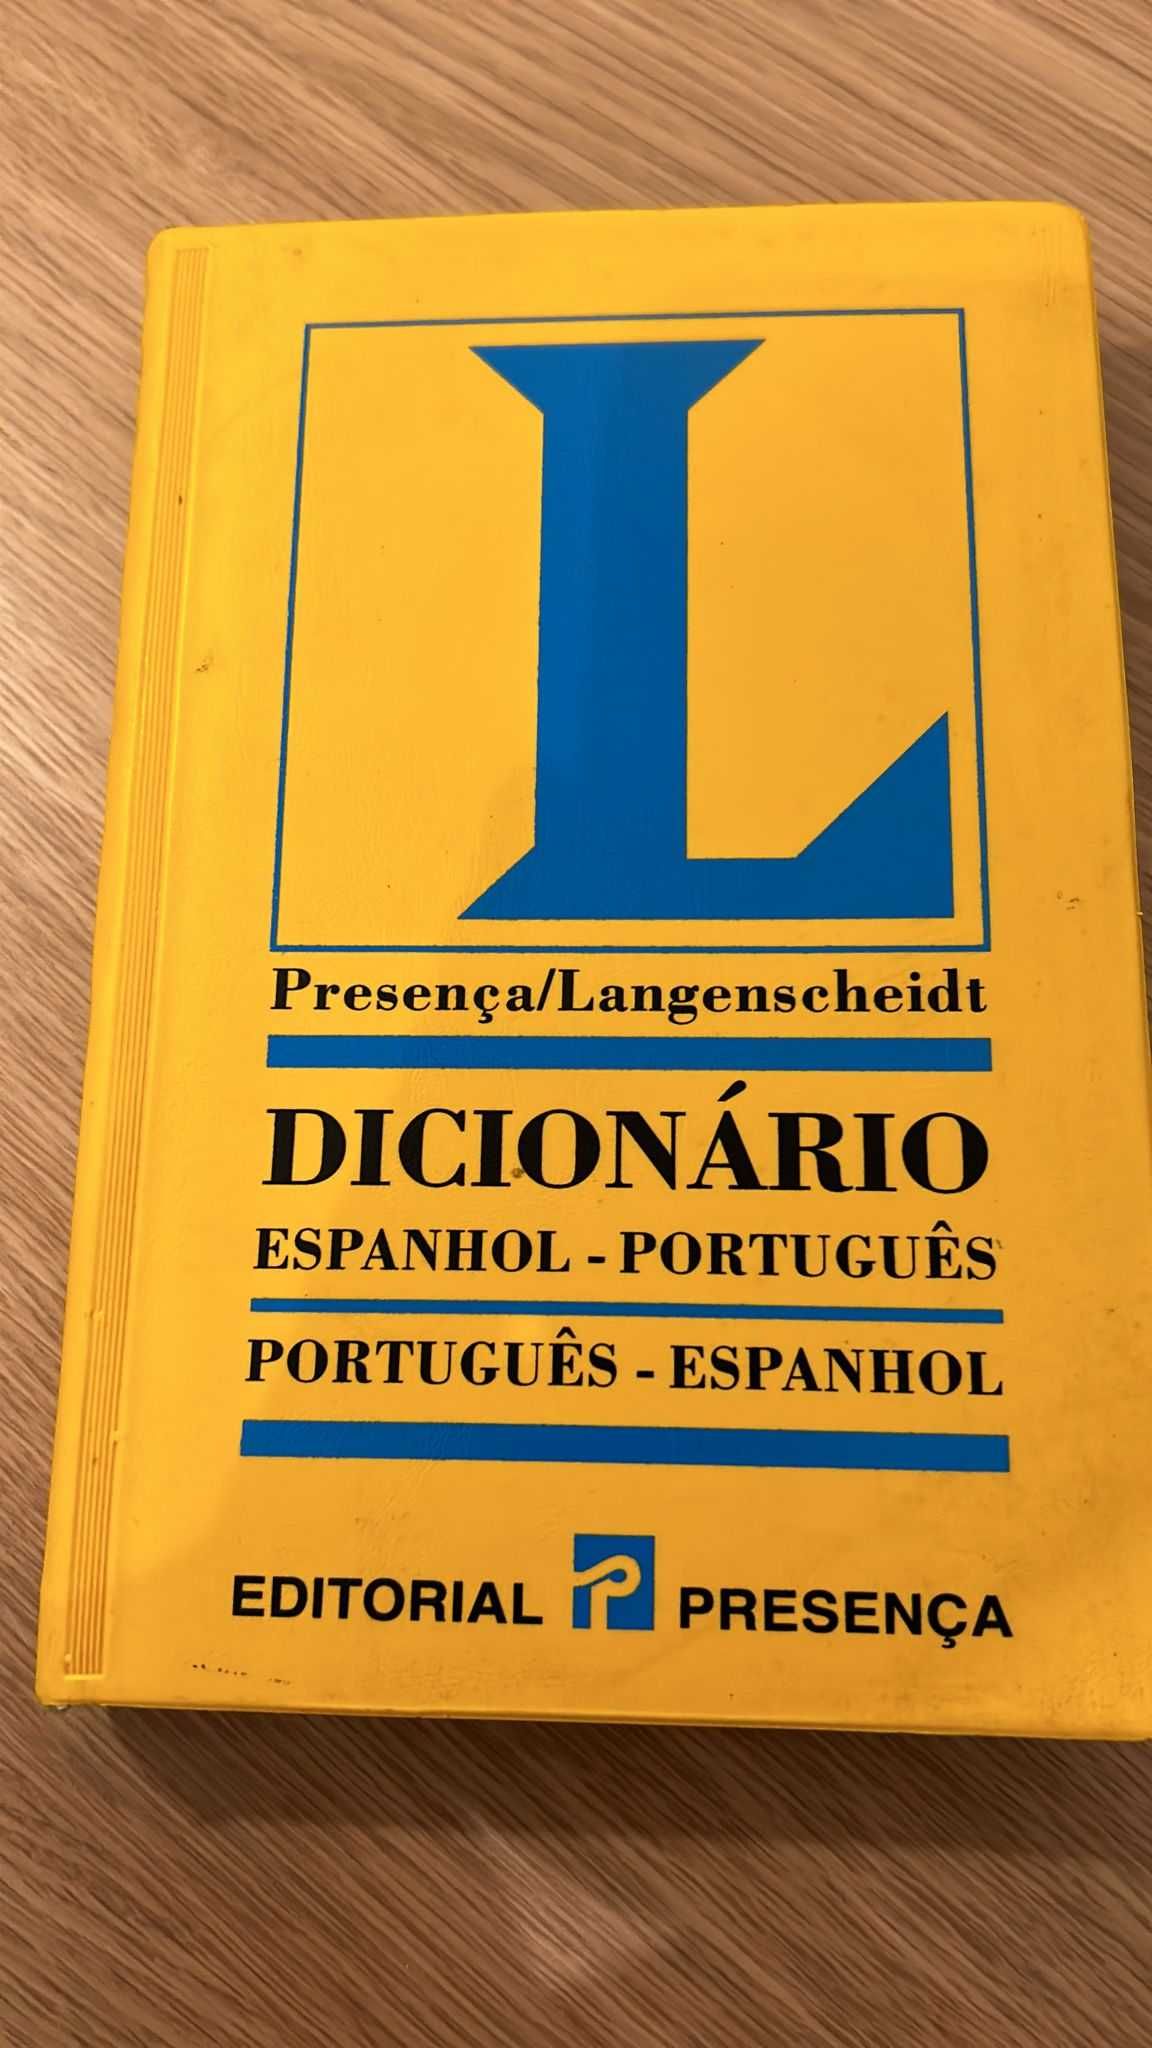 Dicionário Espanhol Português Espanhol